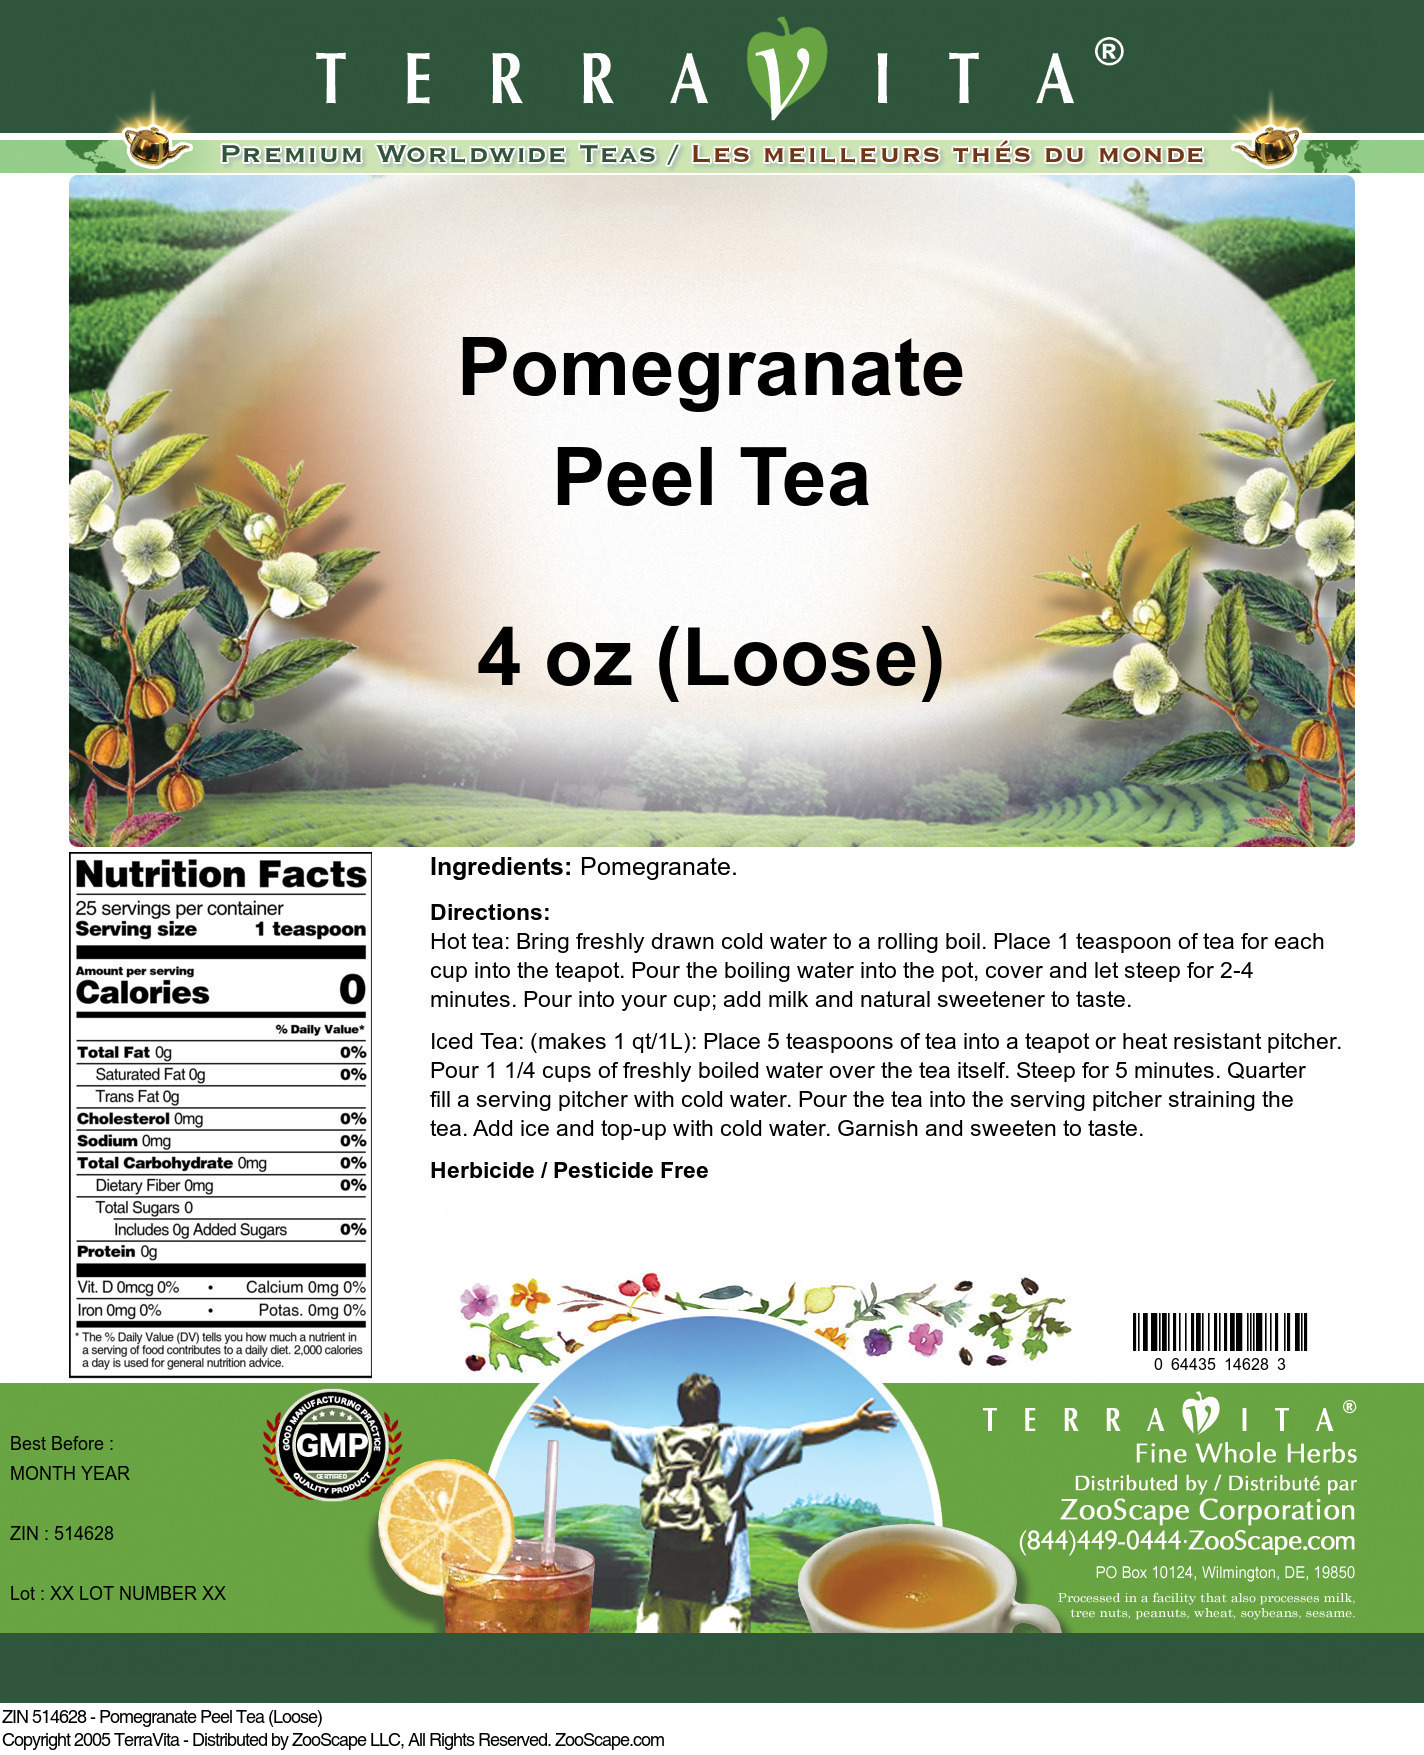 Pomegranate Peel Tea (Loose) - Label